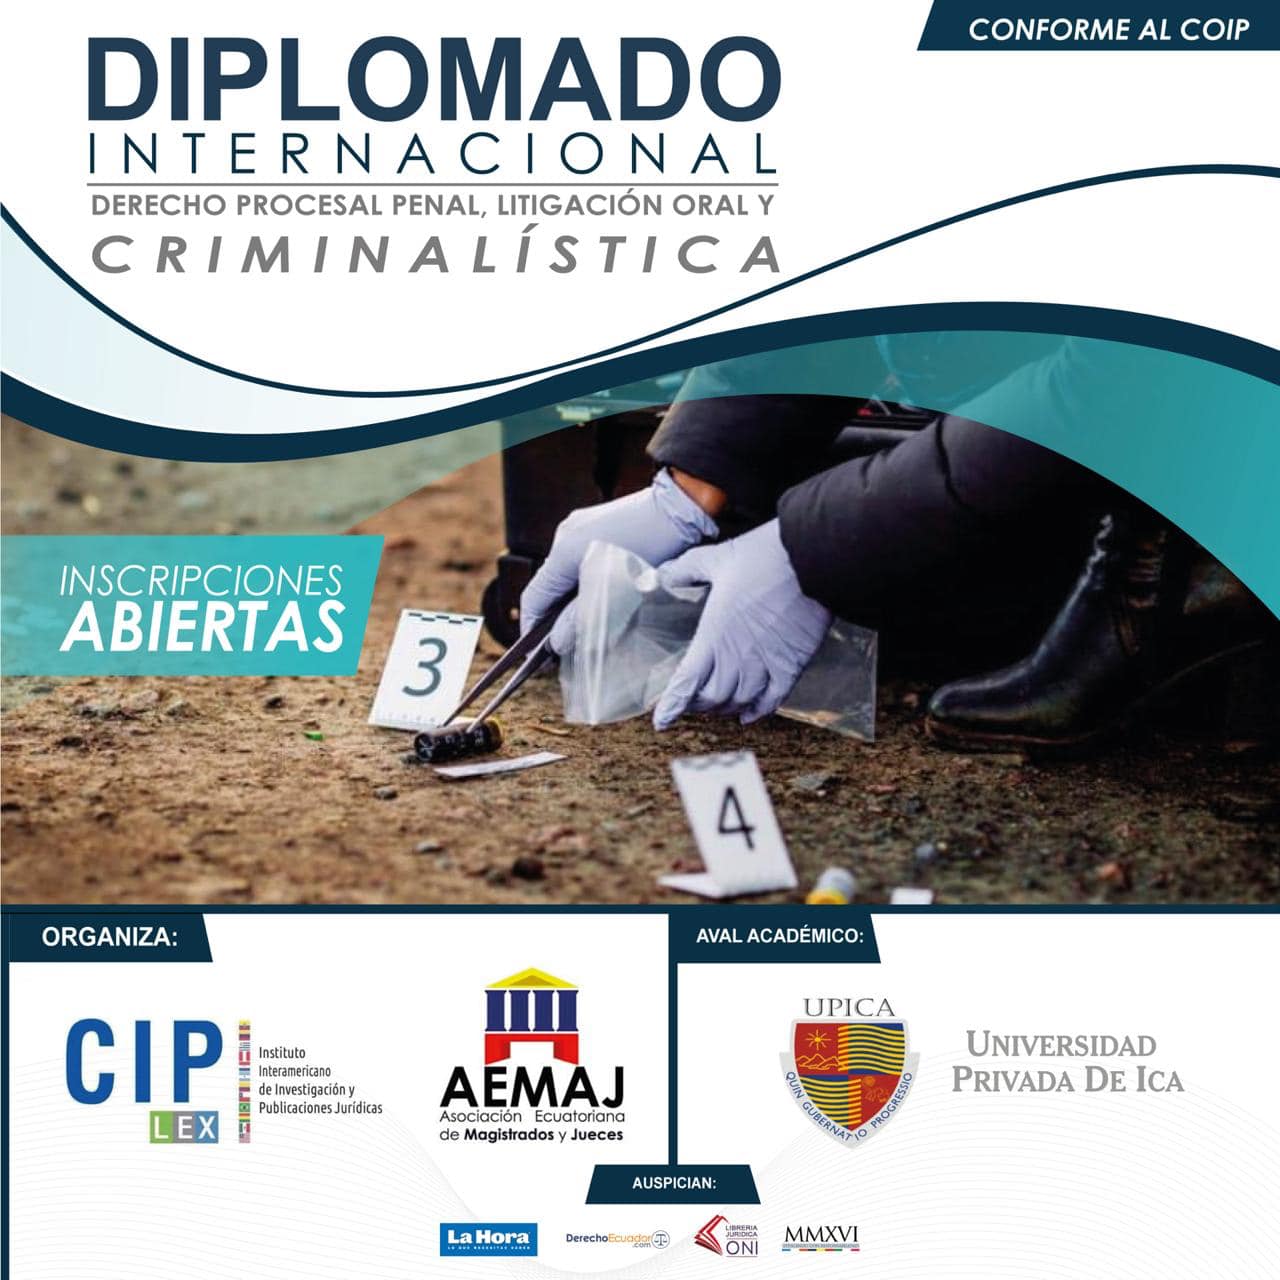 Diplomado Internacional en Derecho Procesal Penal, Litigación Oral y Criminalística